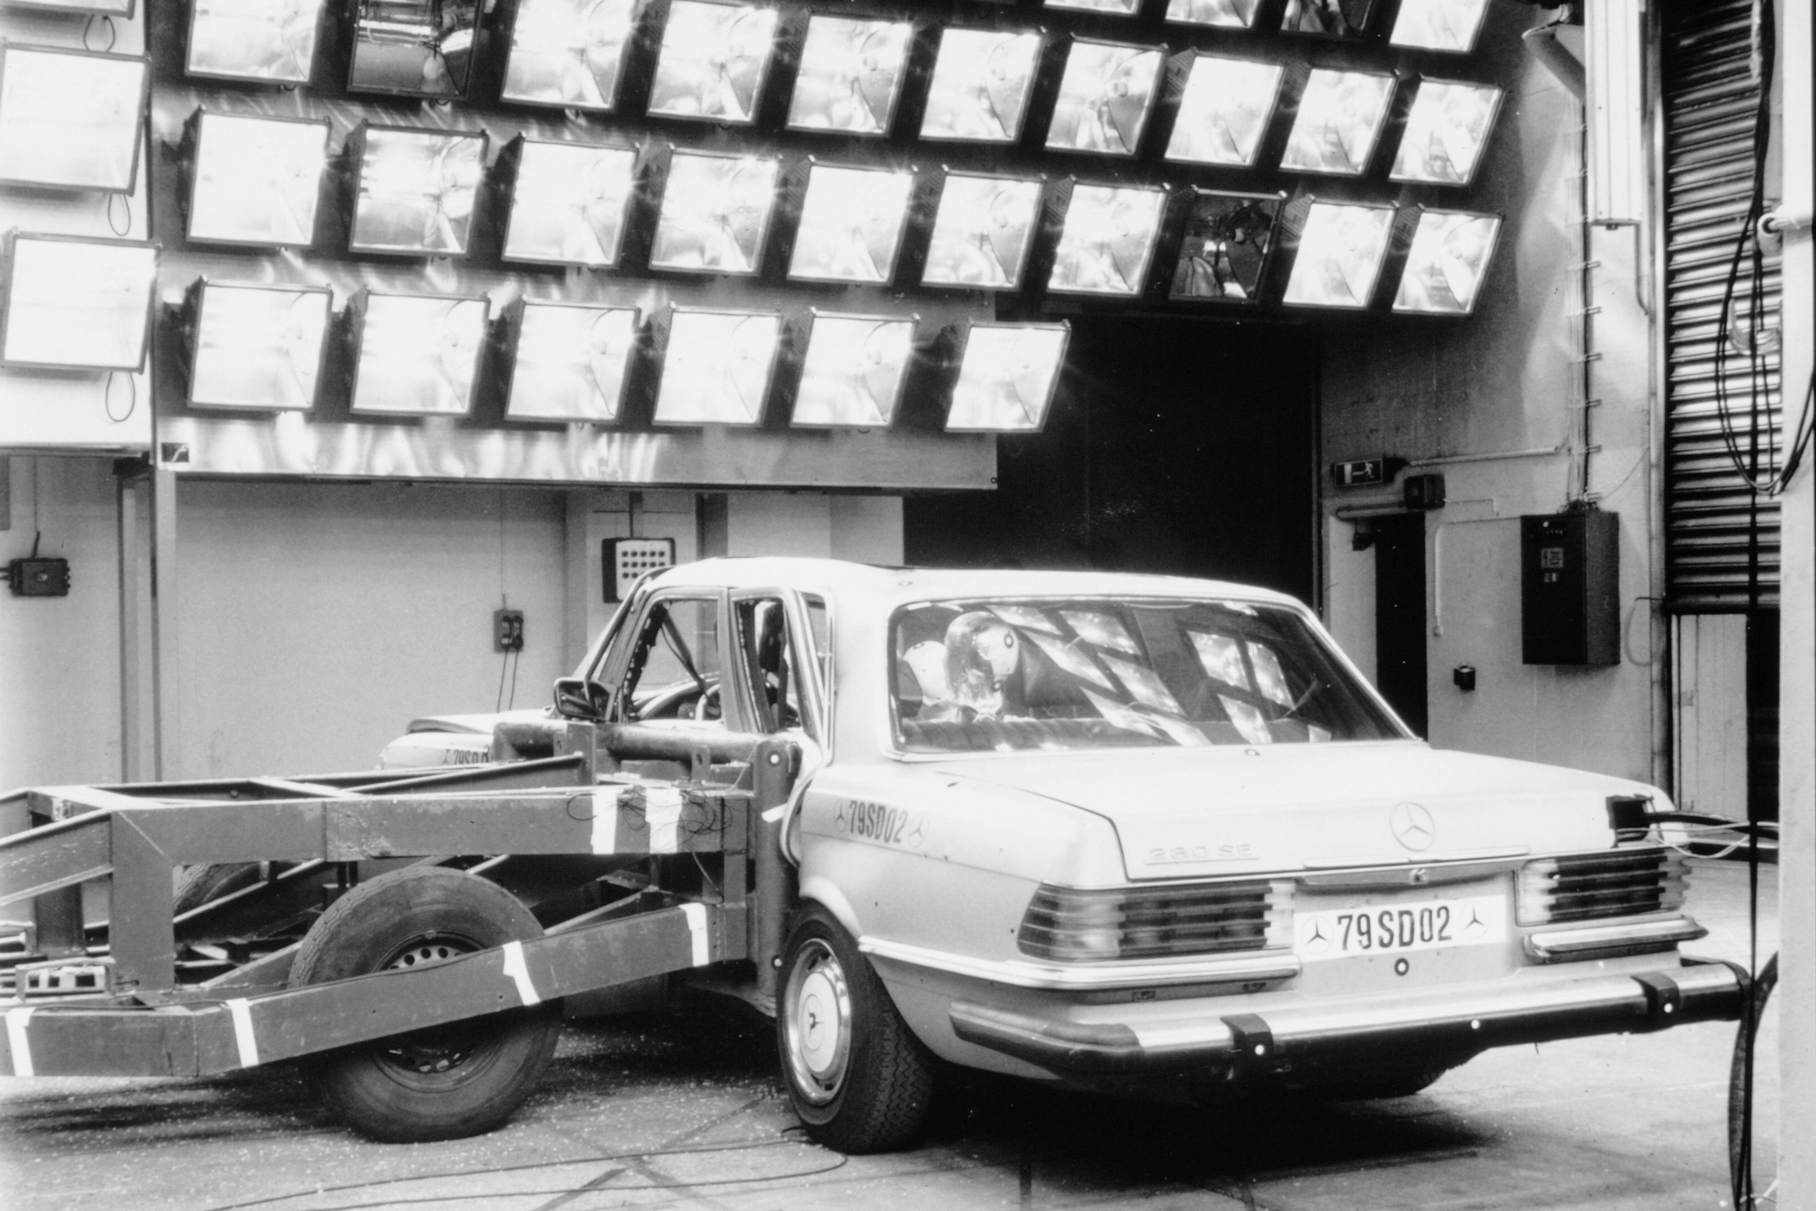 В семидесятые Mercedes вовсю экспериментировал с боковыми краш-тестами. Сейчас это стандартная процедура, но тогда этим мало кто занимался. Снимок датирован 1979 годом.